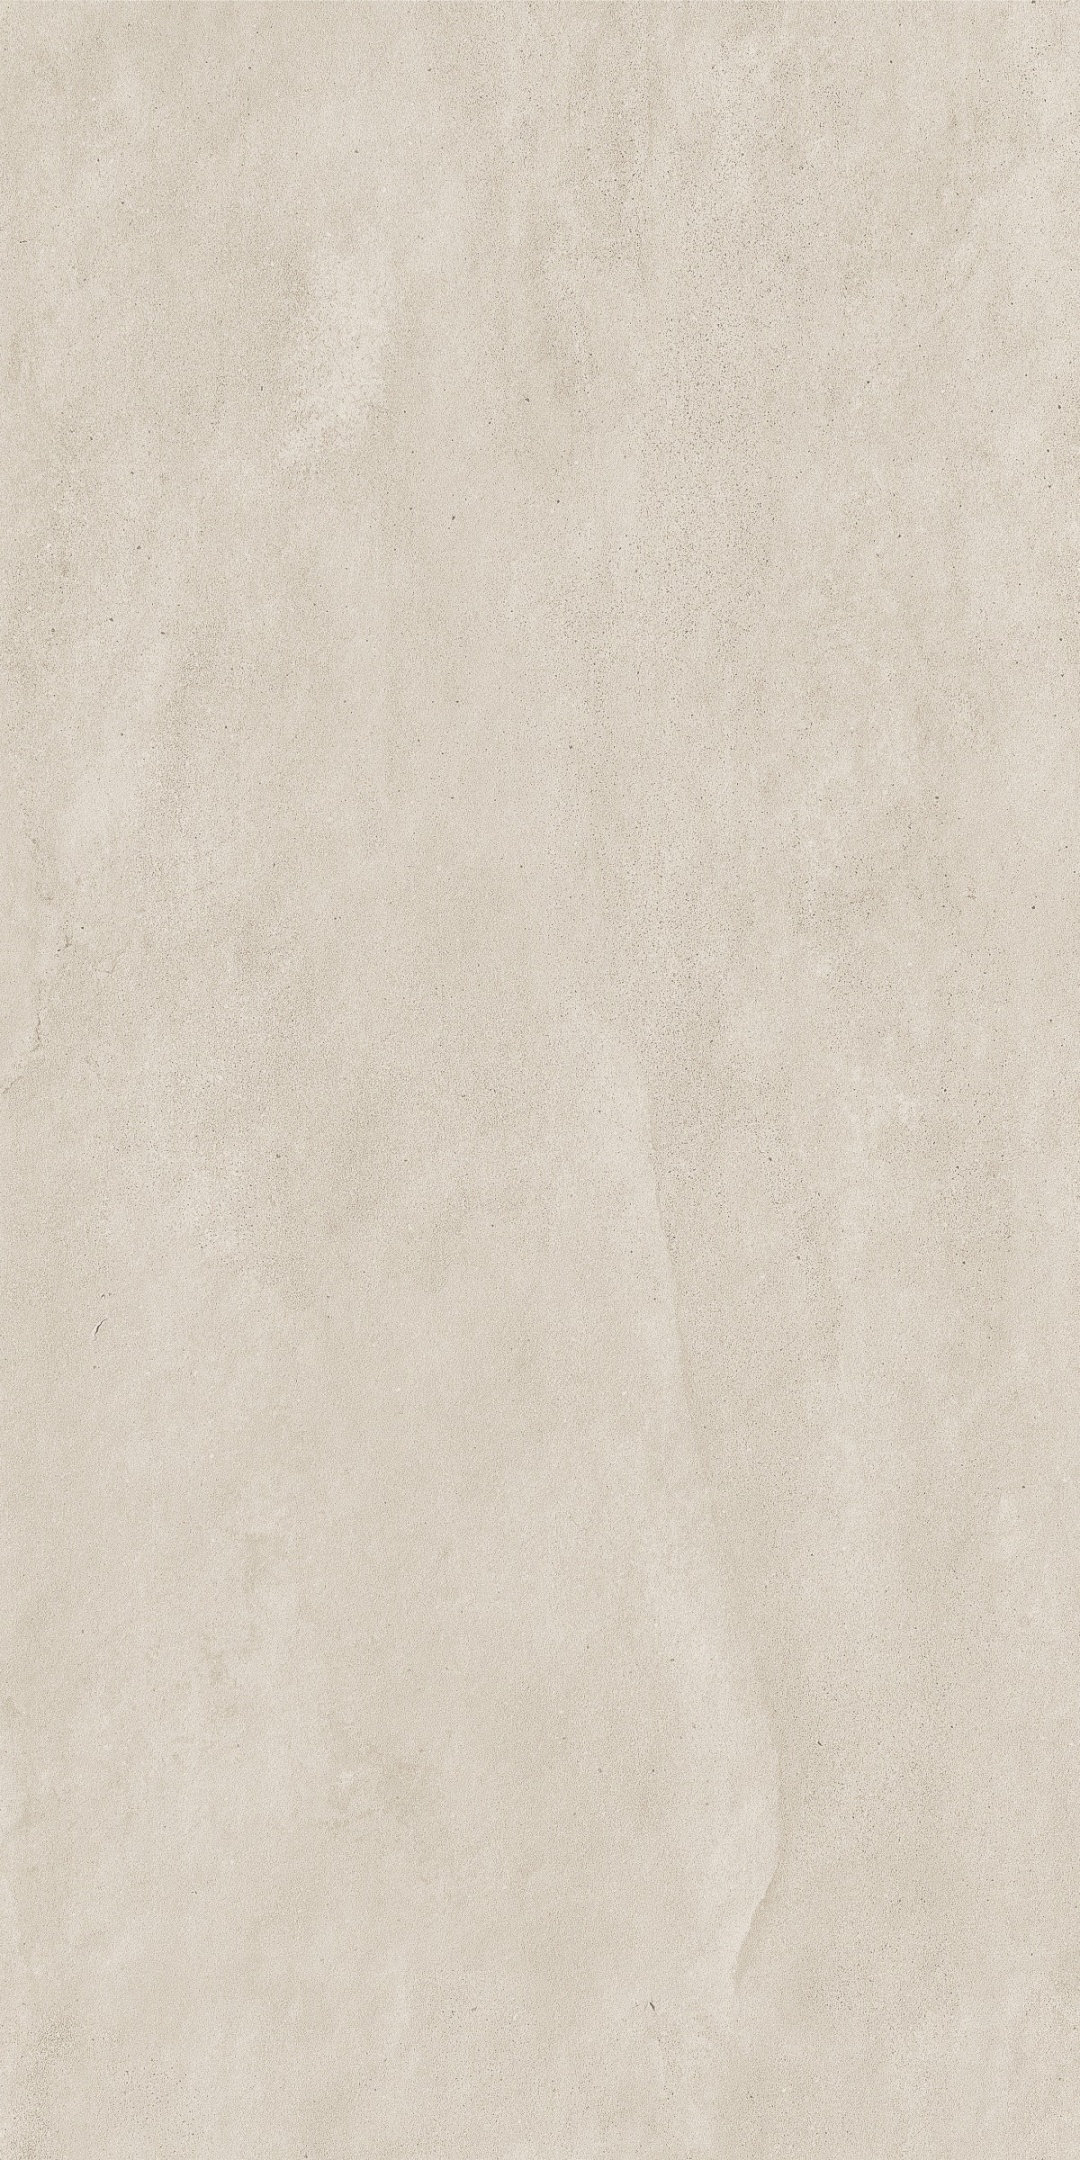 惠达瓷砖西沙系列|质感与视觉碰撞 让空间充满遐想(图16)